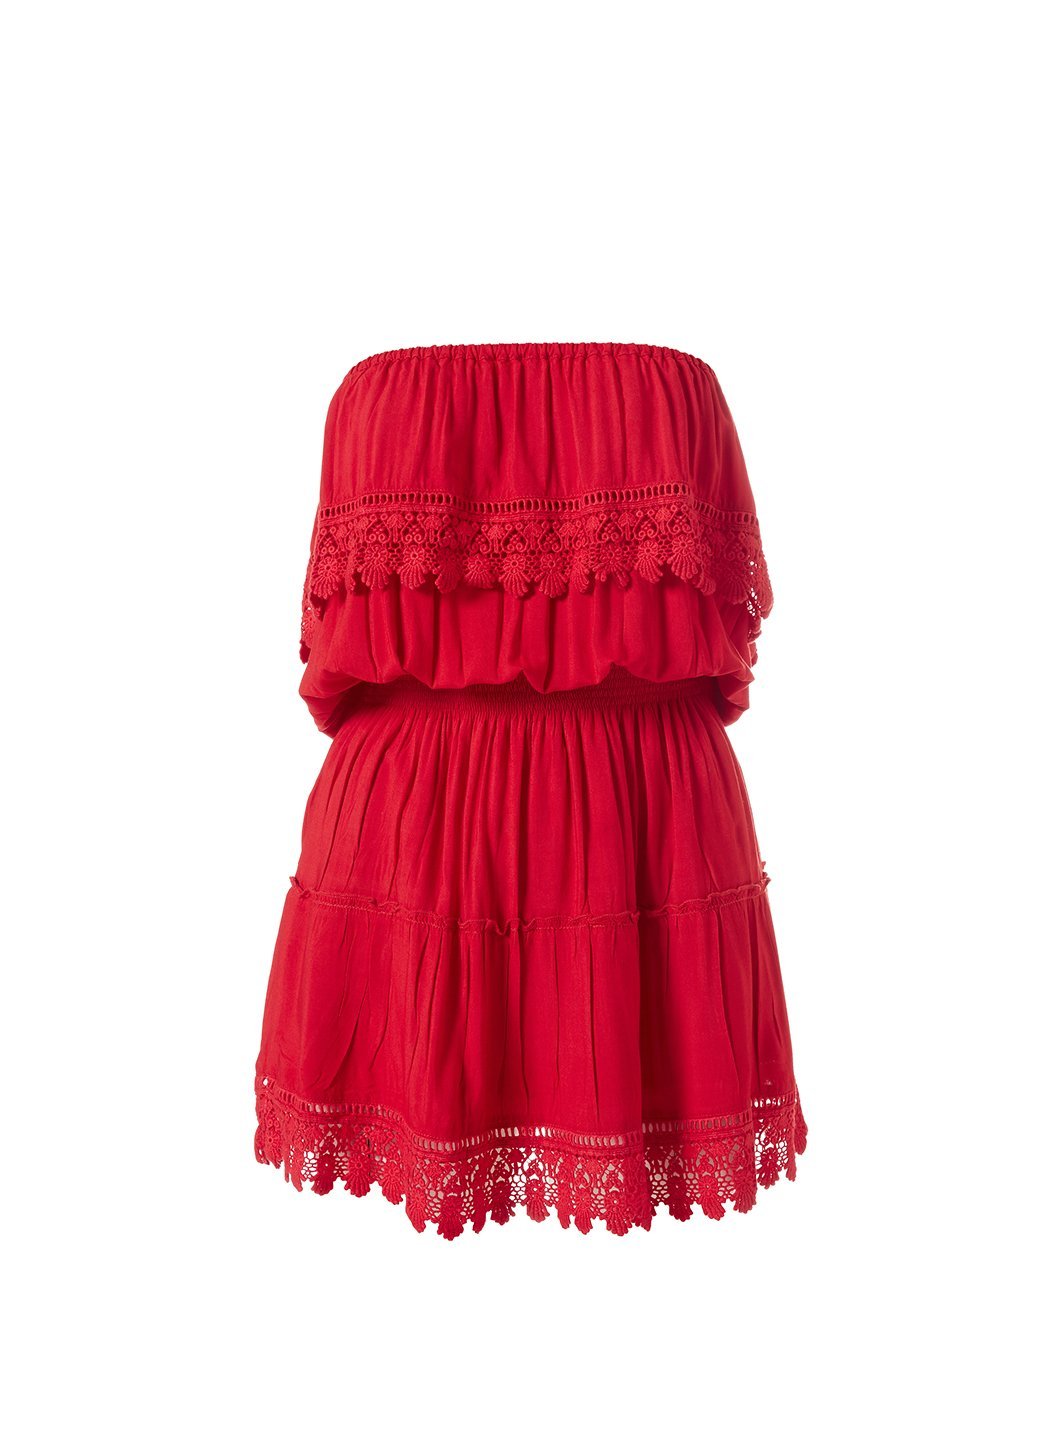 Melissa Odabash Joy Red Embroidered Bandeau Dress | Official Website